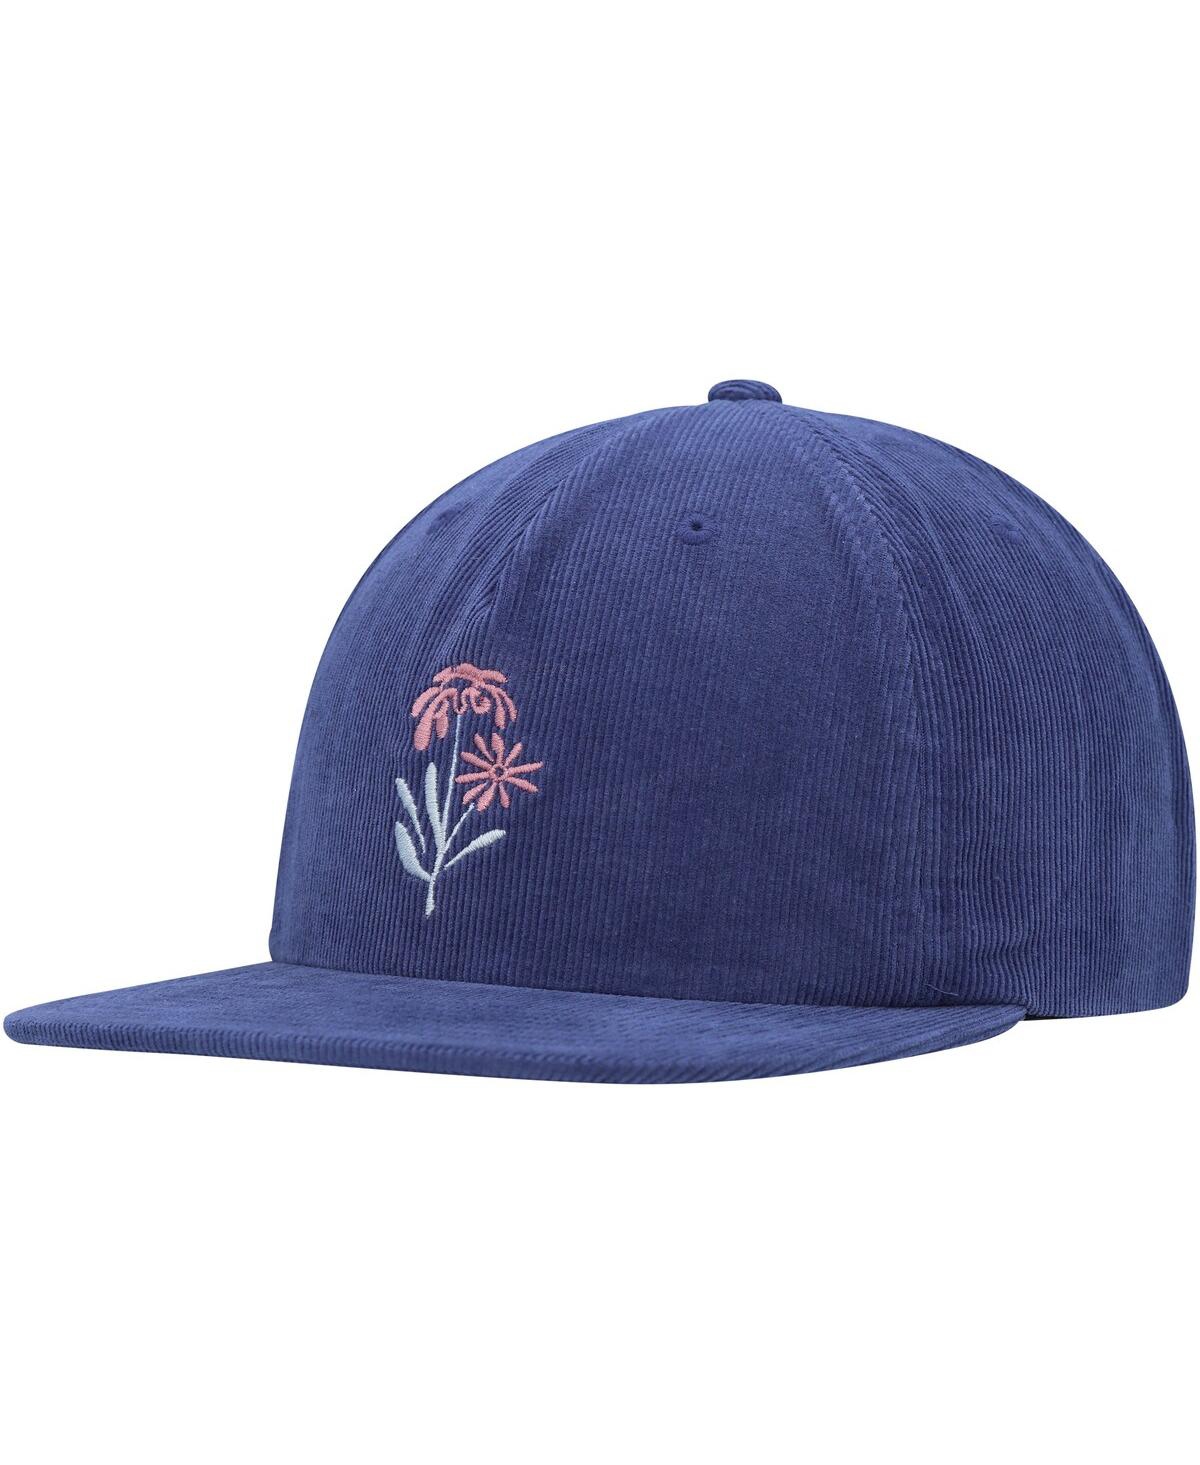 Shop Rvca Men's  Royal Bloomed Adjustable Hat